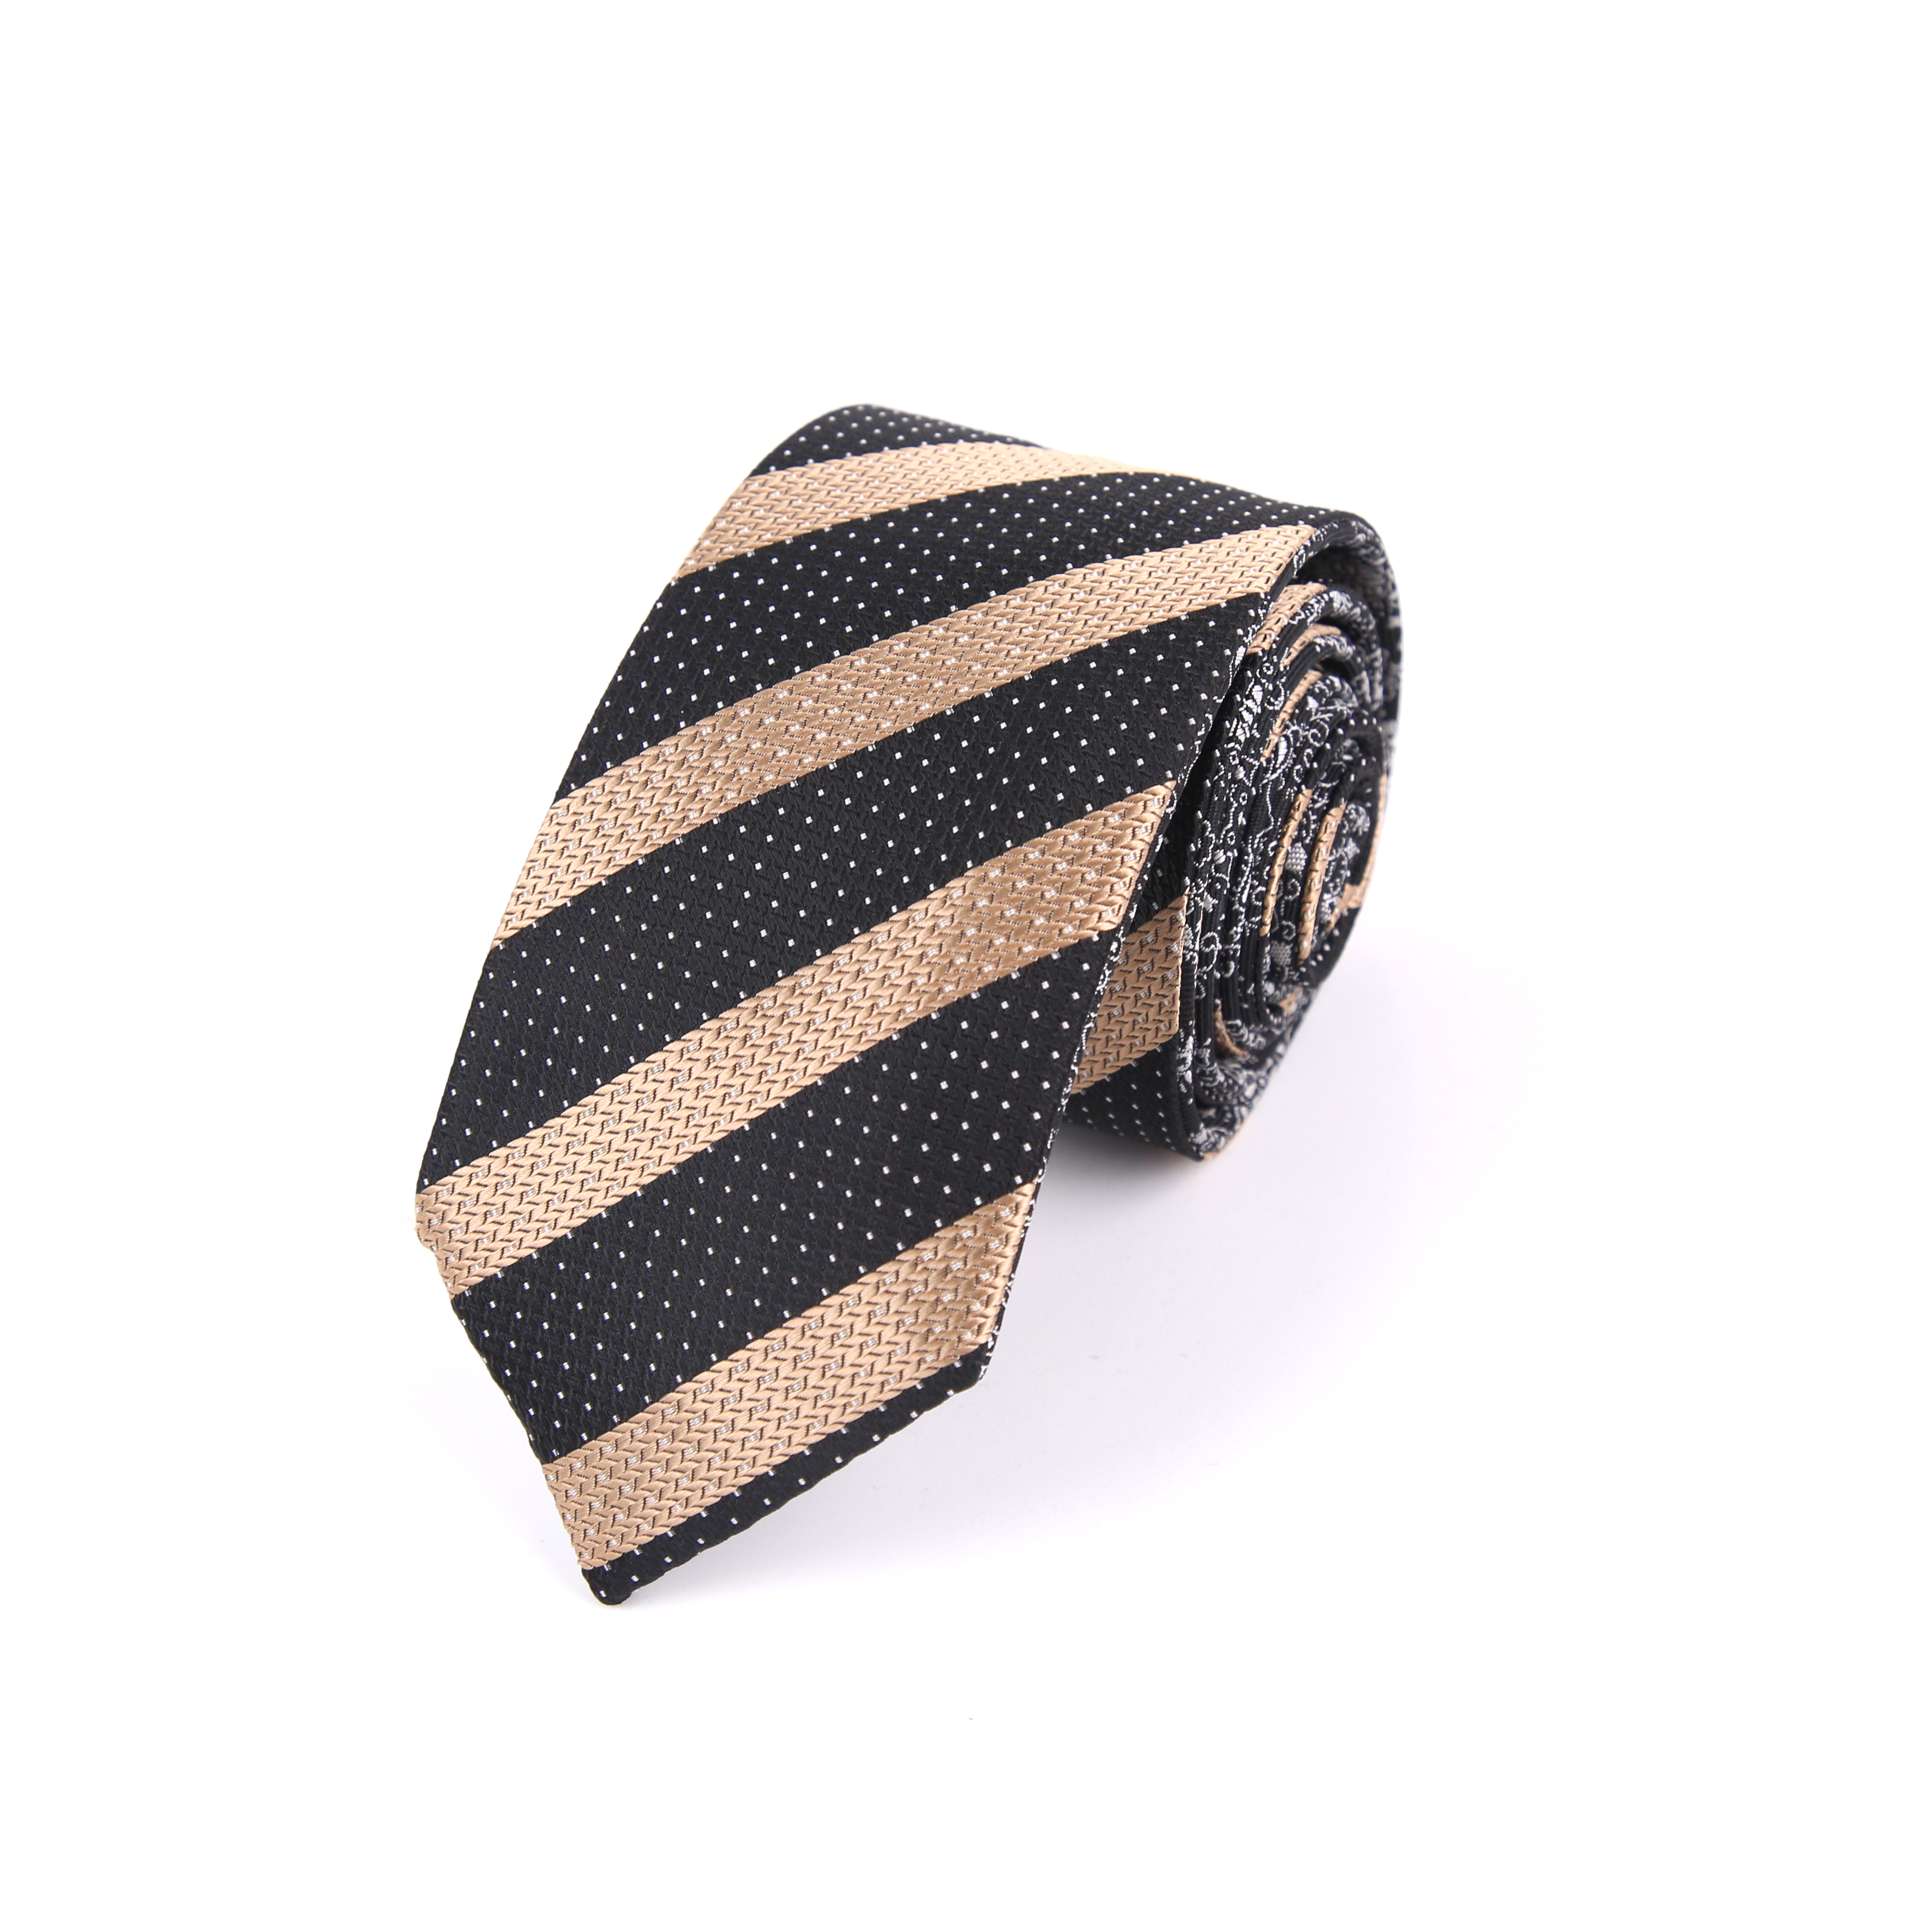 厂家直供 职业正装双面领带服饰穿搭配件商务时尚衬衫男士领带